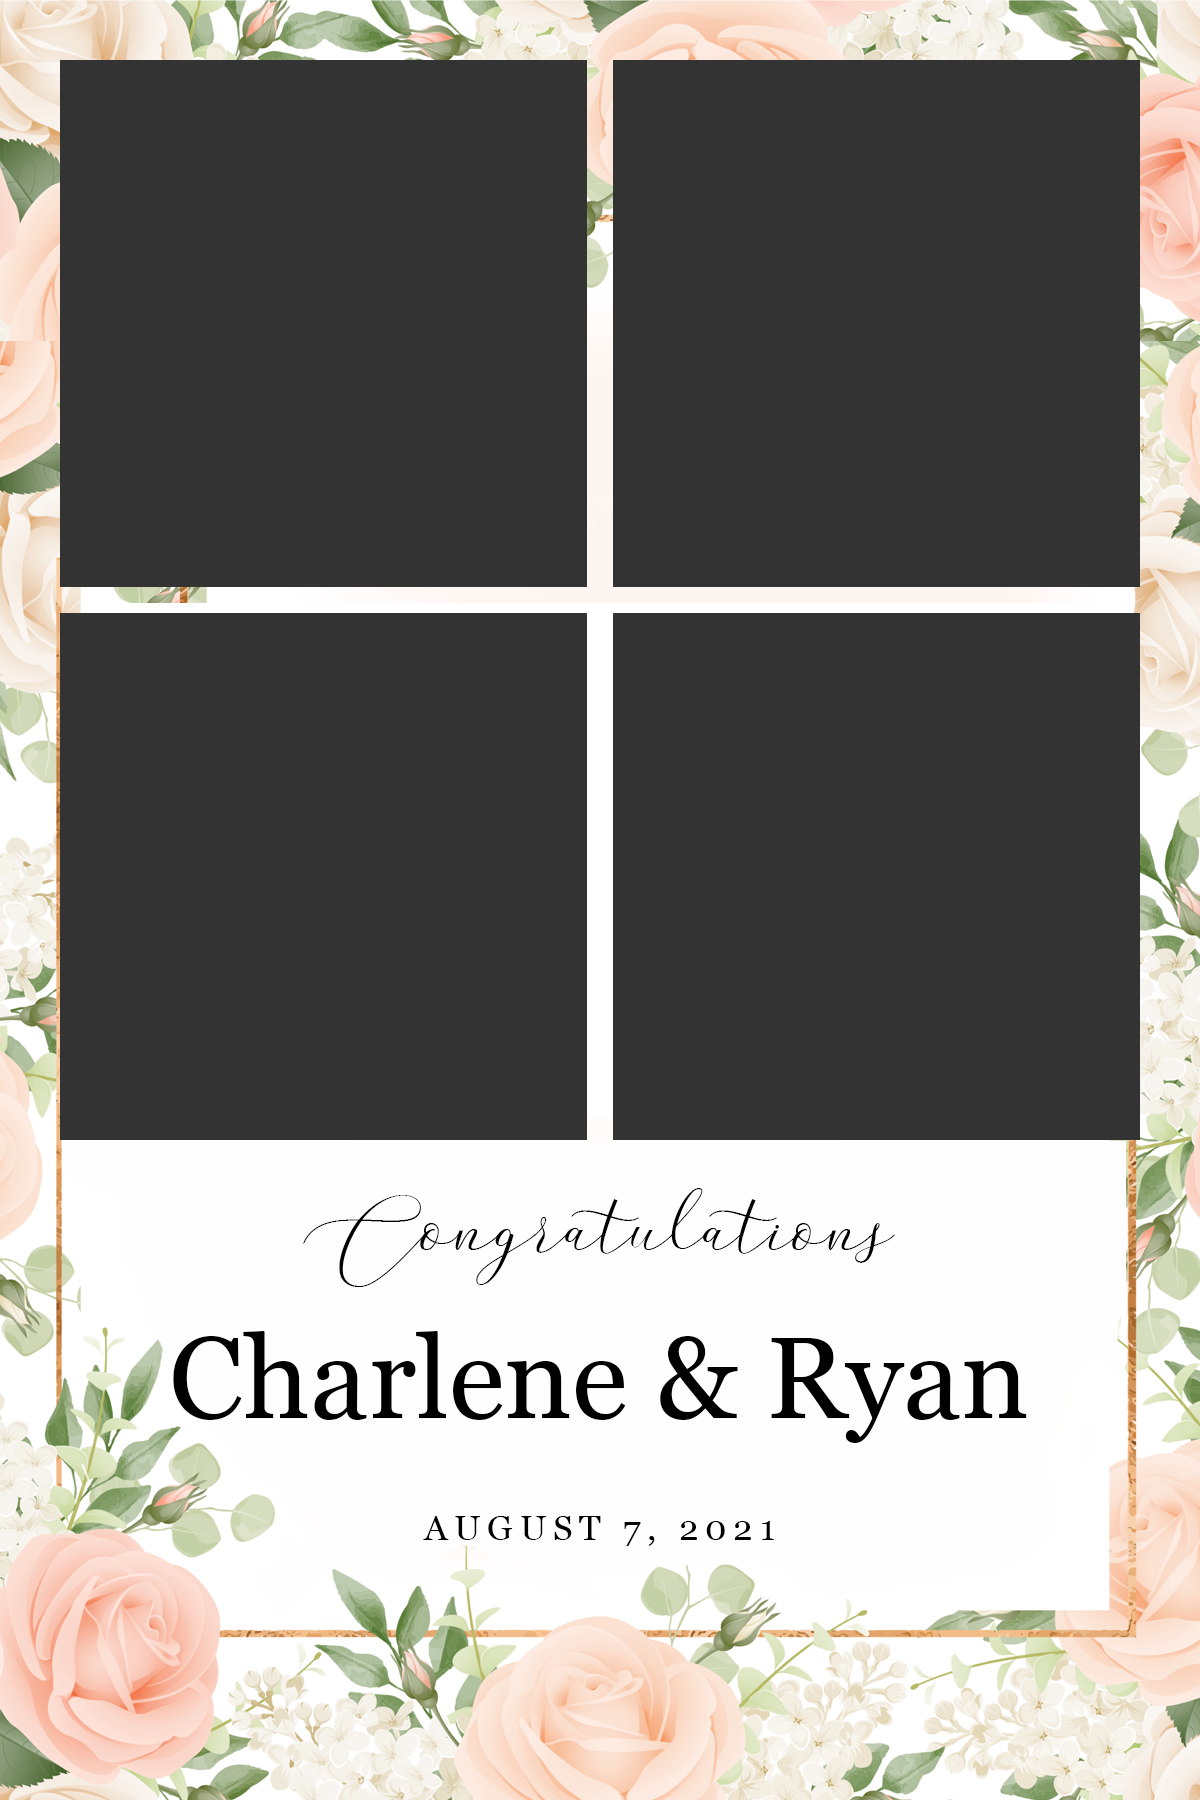 Ryan+Charlene_12_FINAL copy